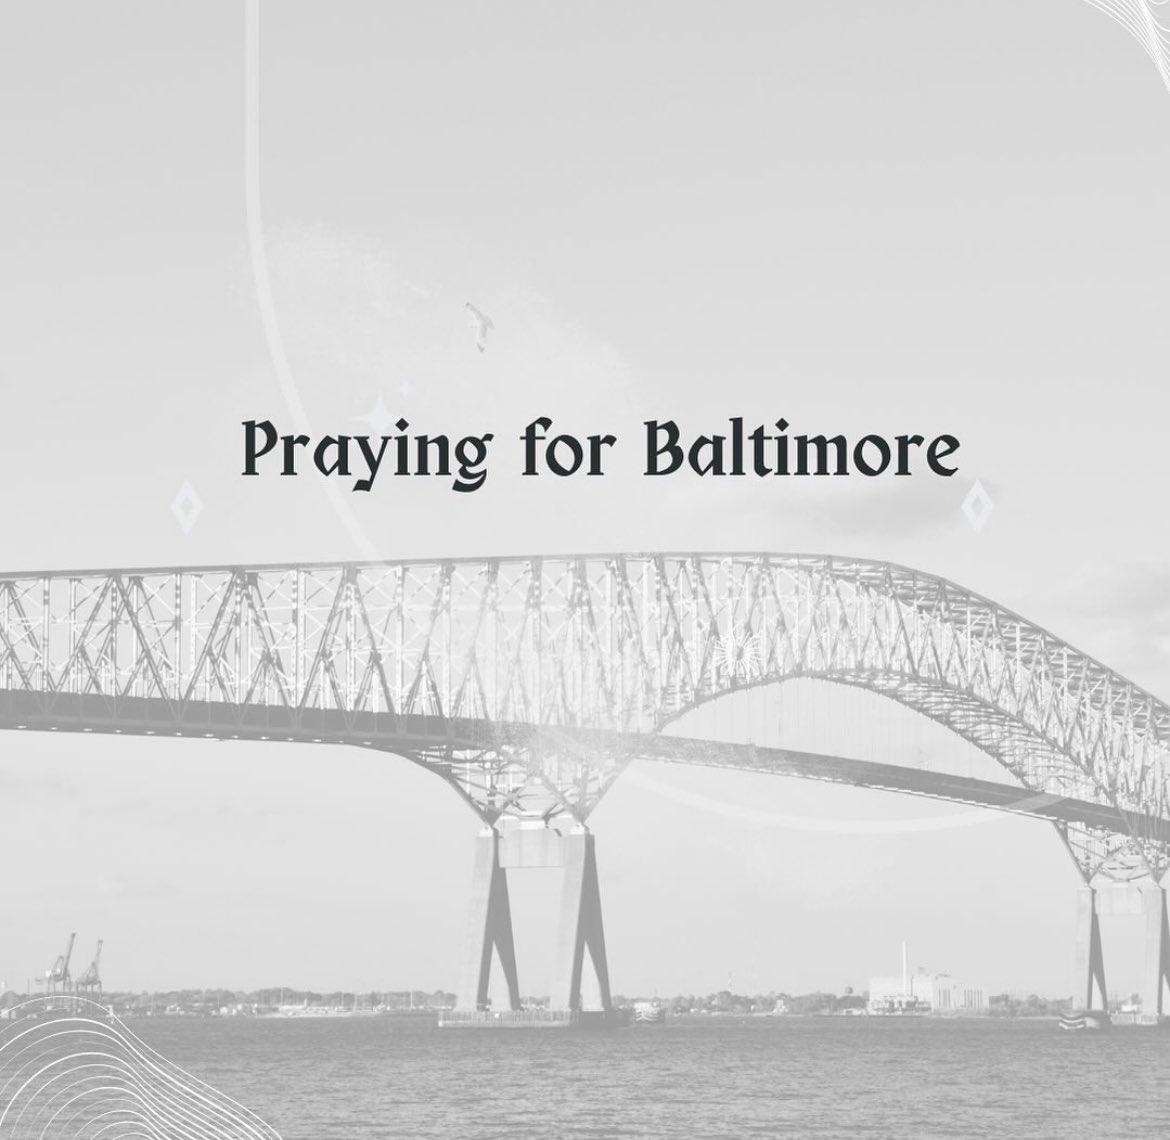 #PrayingforBaltimore